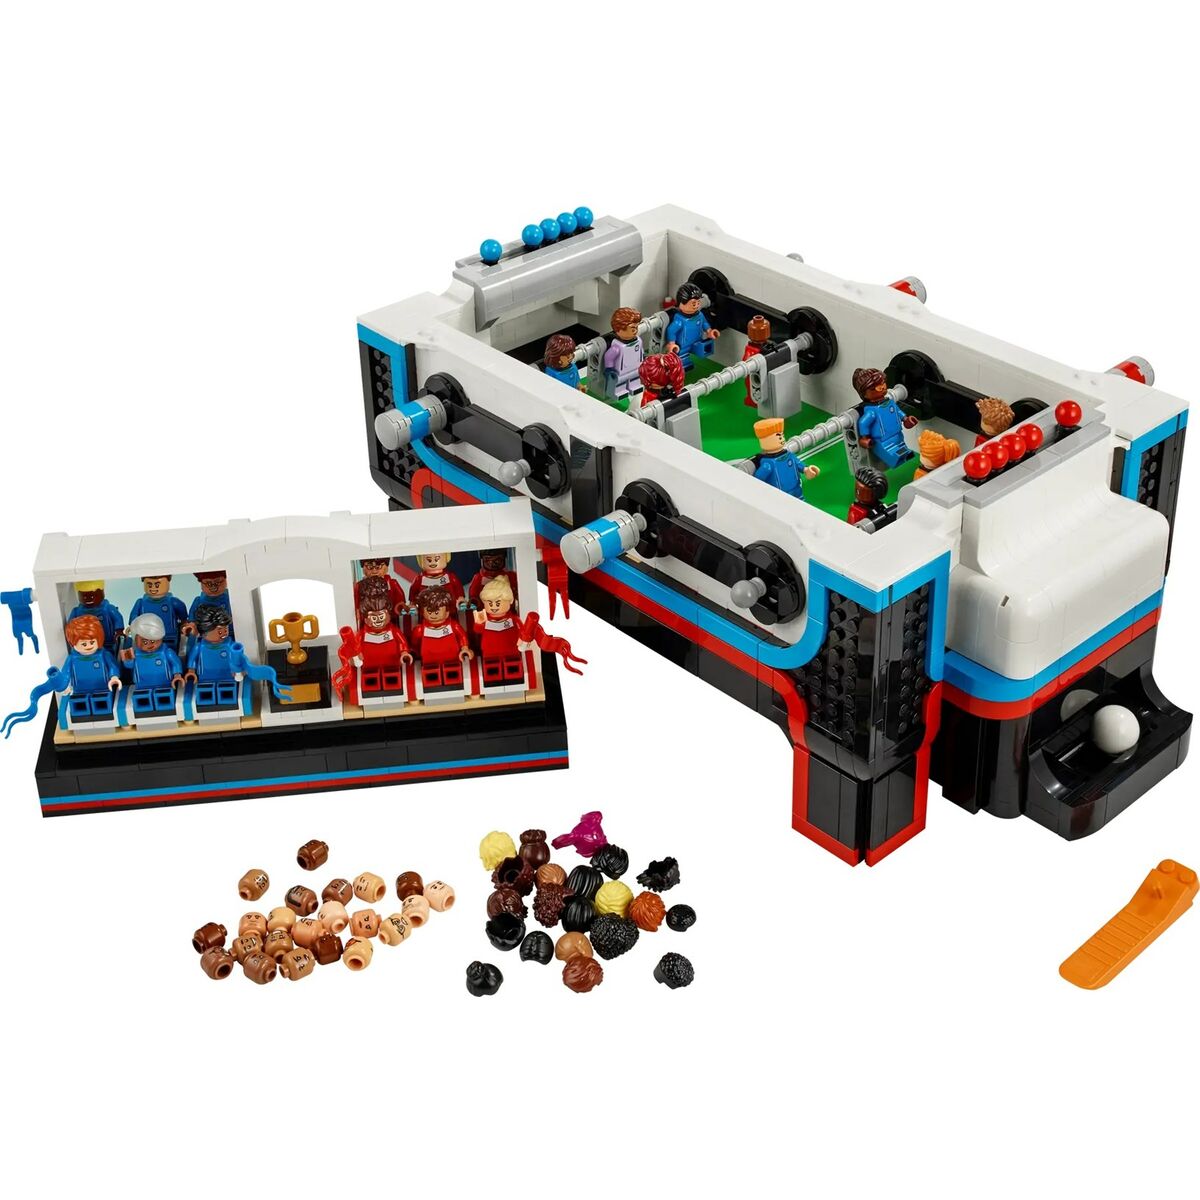 Bouwspel Lego 21337 2339 Onderdelen